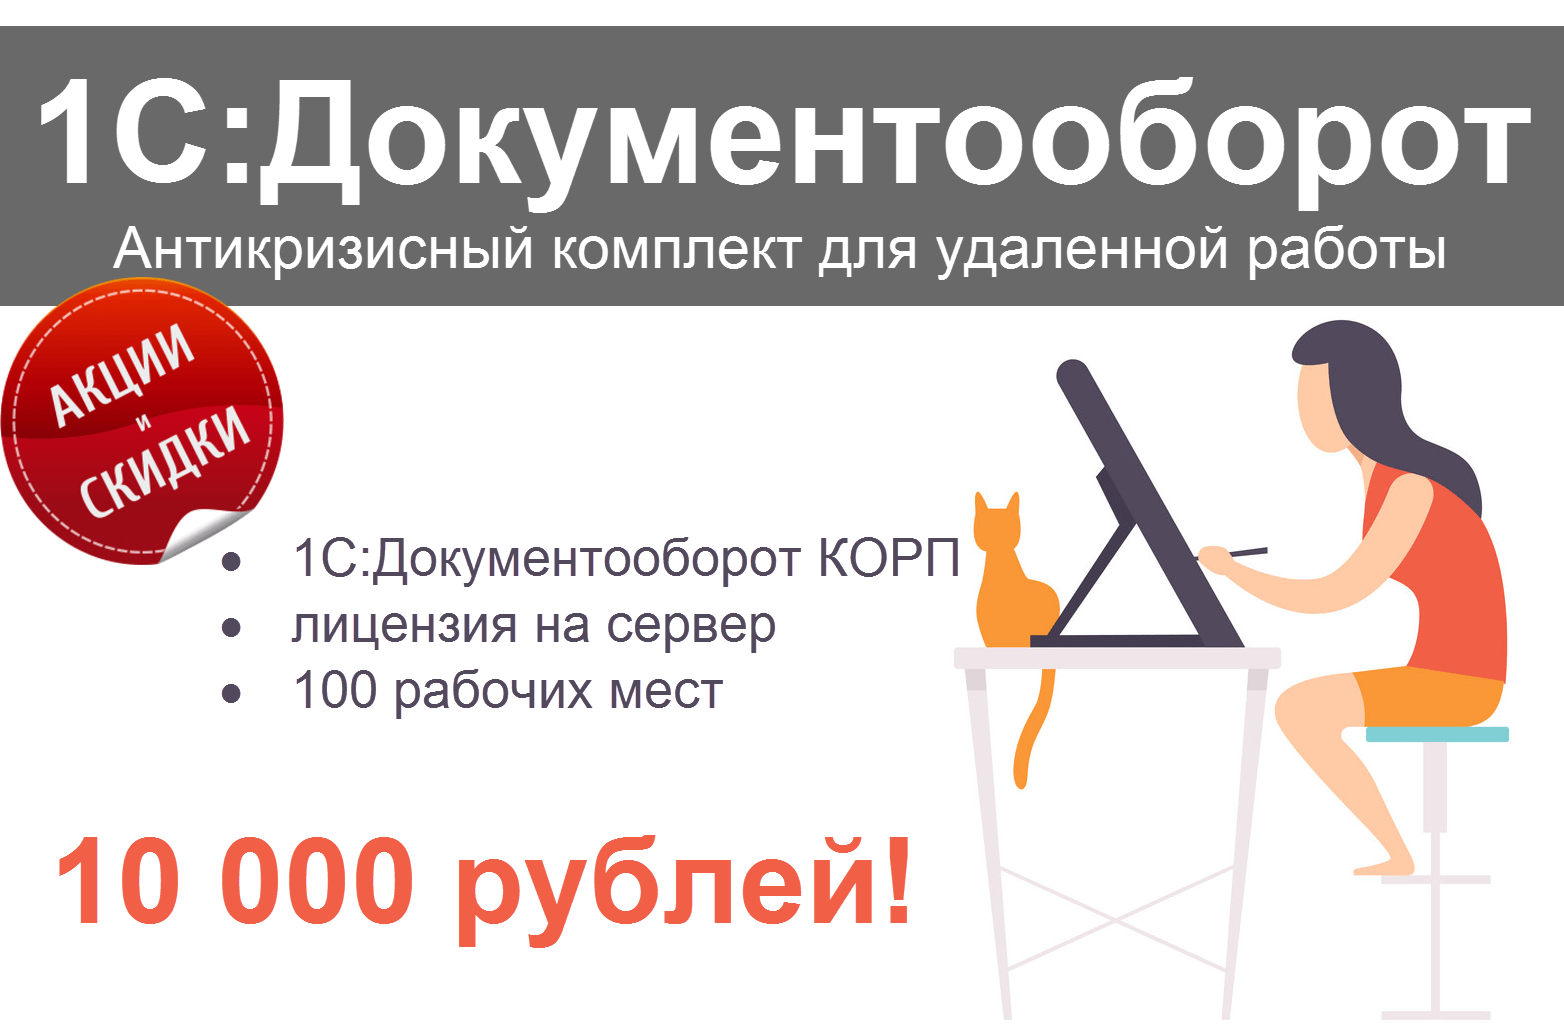 Акция: «1С:Документооборот. Антикризисный комплект для удаленной работы» с лицензией на сервер + 100 рабочих мест за 10 000 руб.